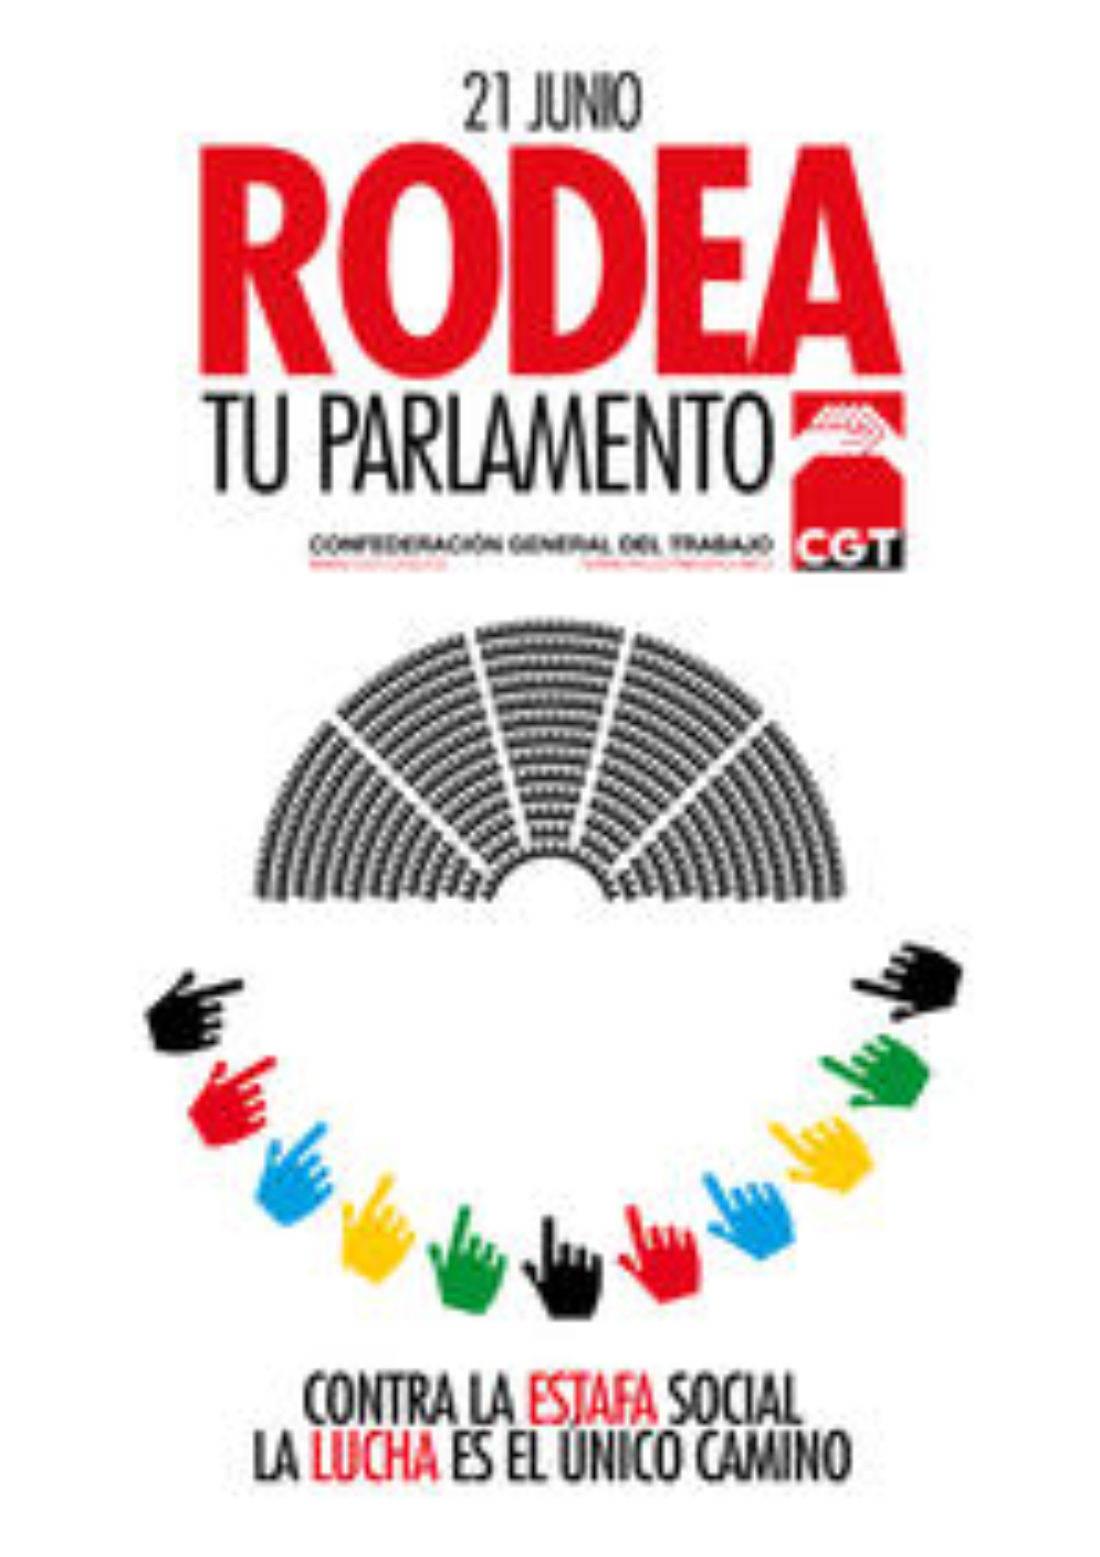 El 21 de Junio «Rodea los Parlamentos». Convocatorias